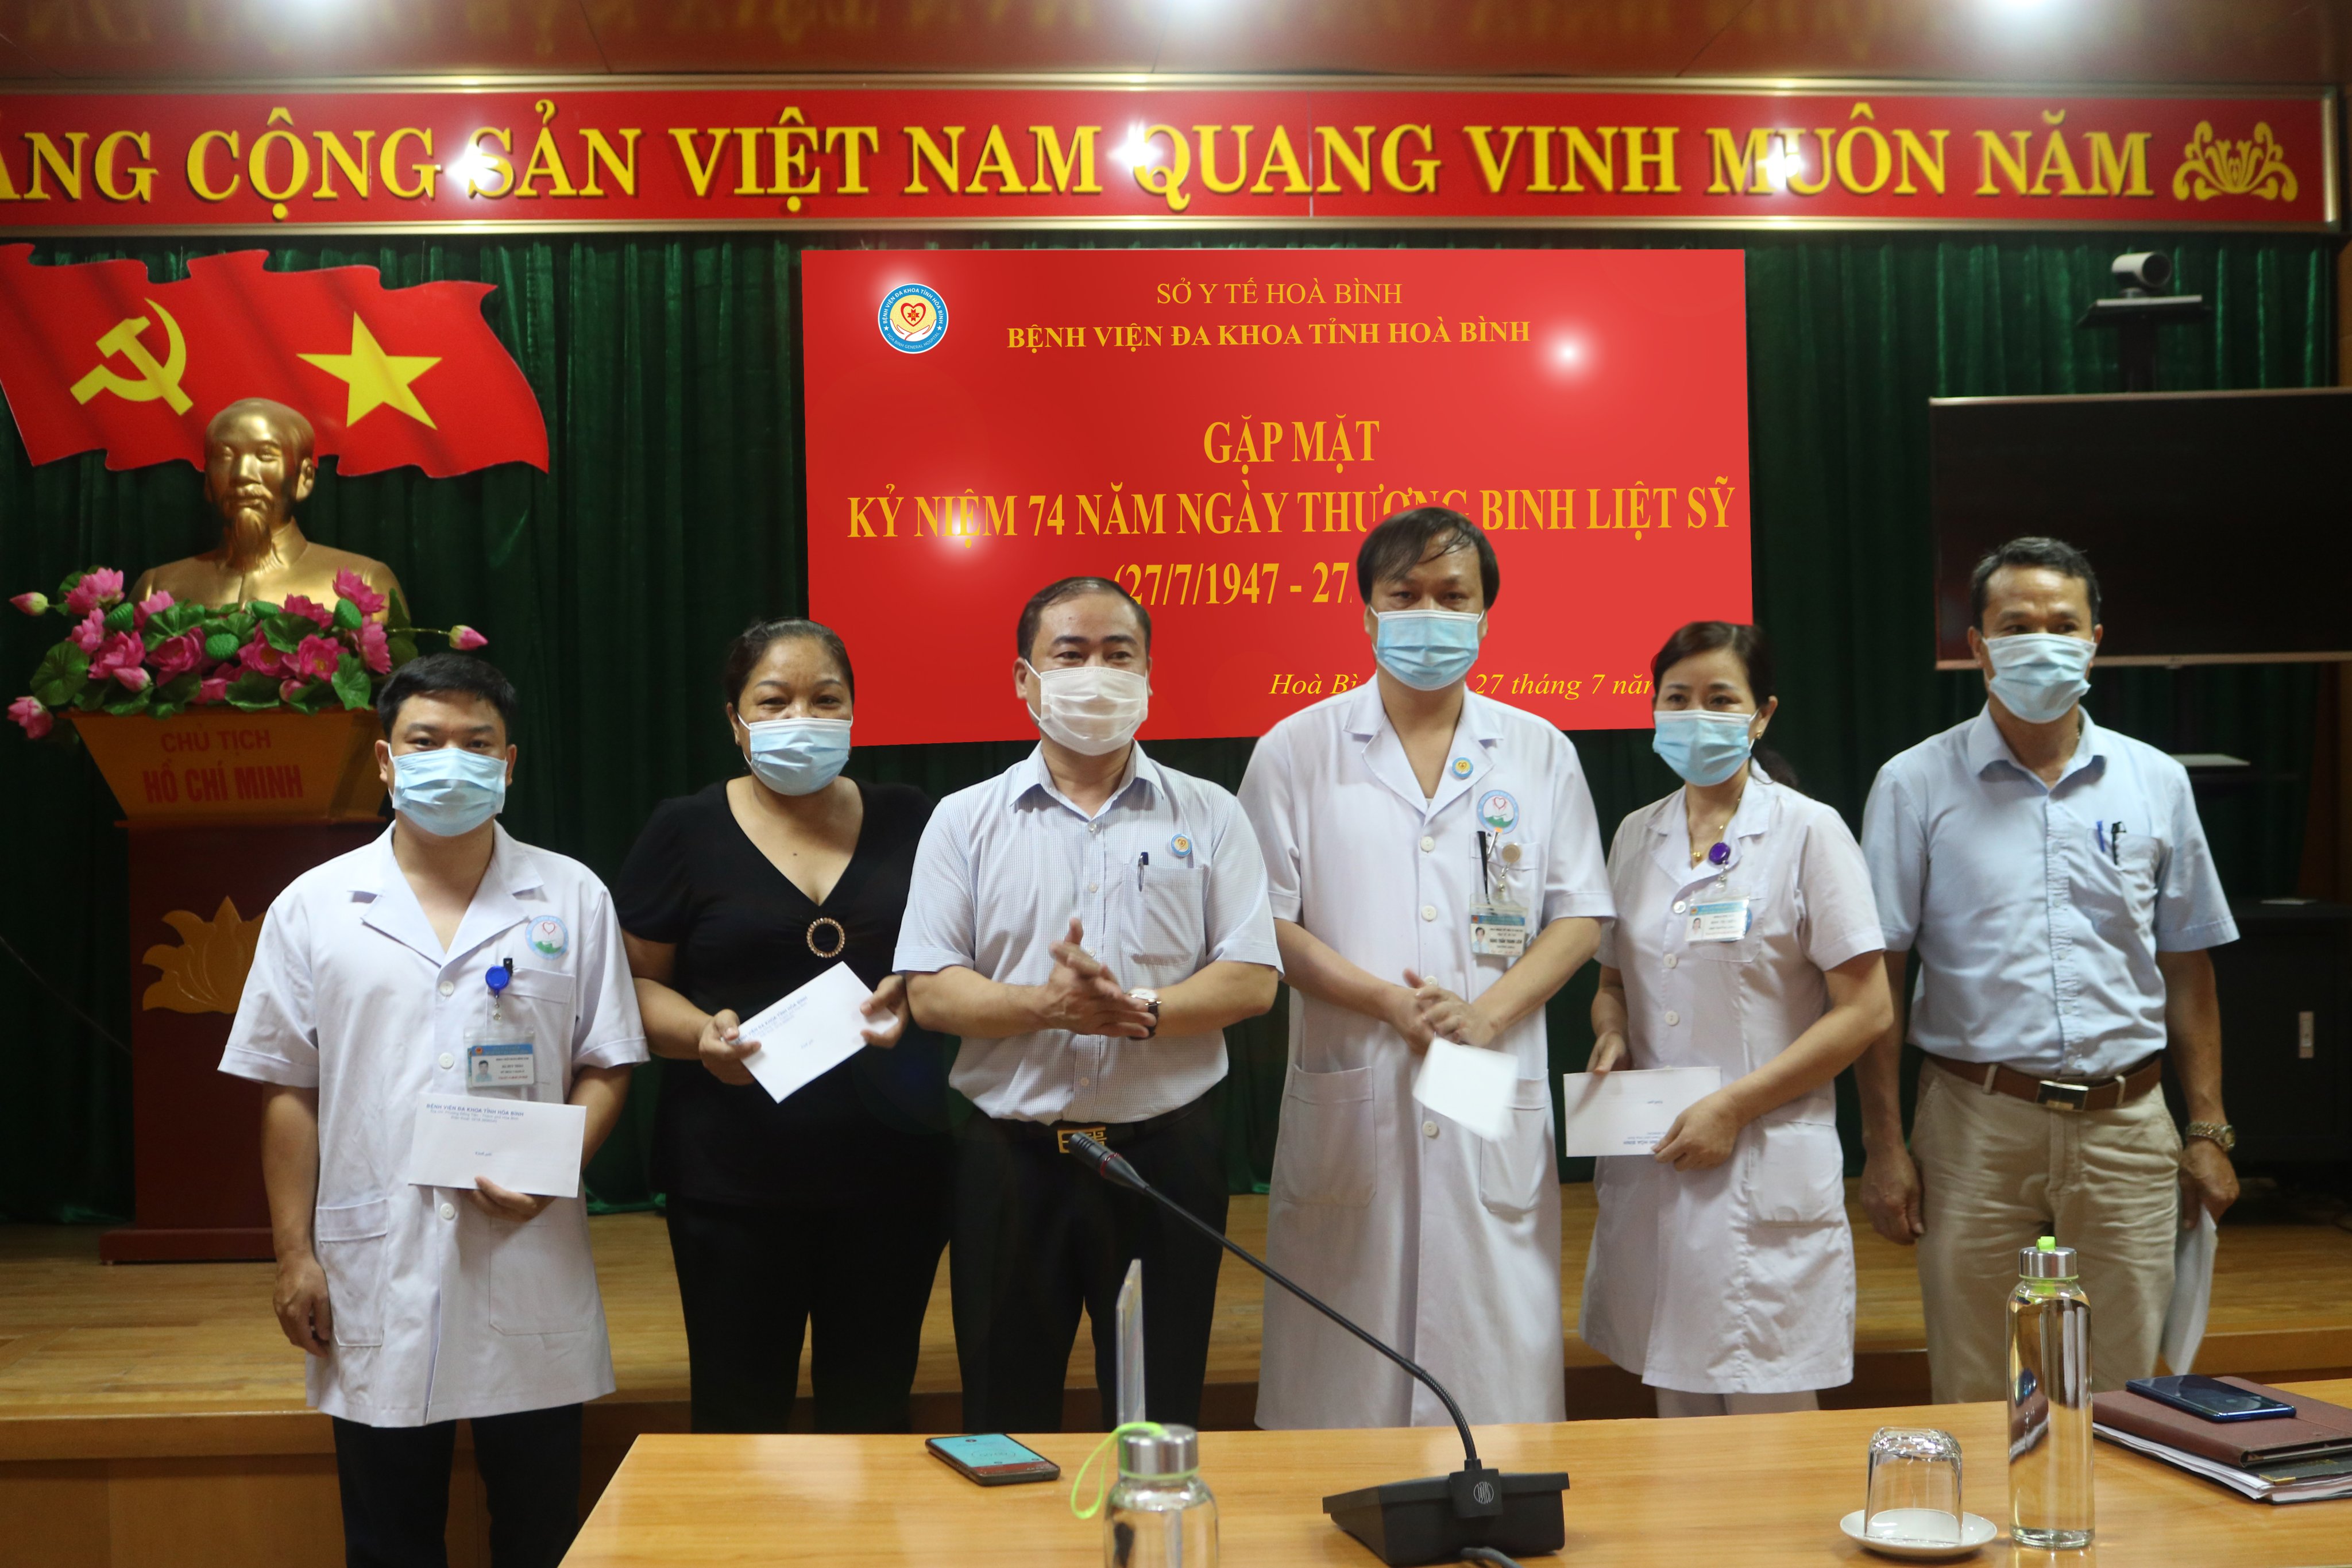 Bệnh viện Đa khoa tỉnh Hoà Bình tổ chức Gặp mặt kỷ niệm 74 năm Ngày Thương binh - Liệt sỹ 